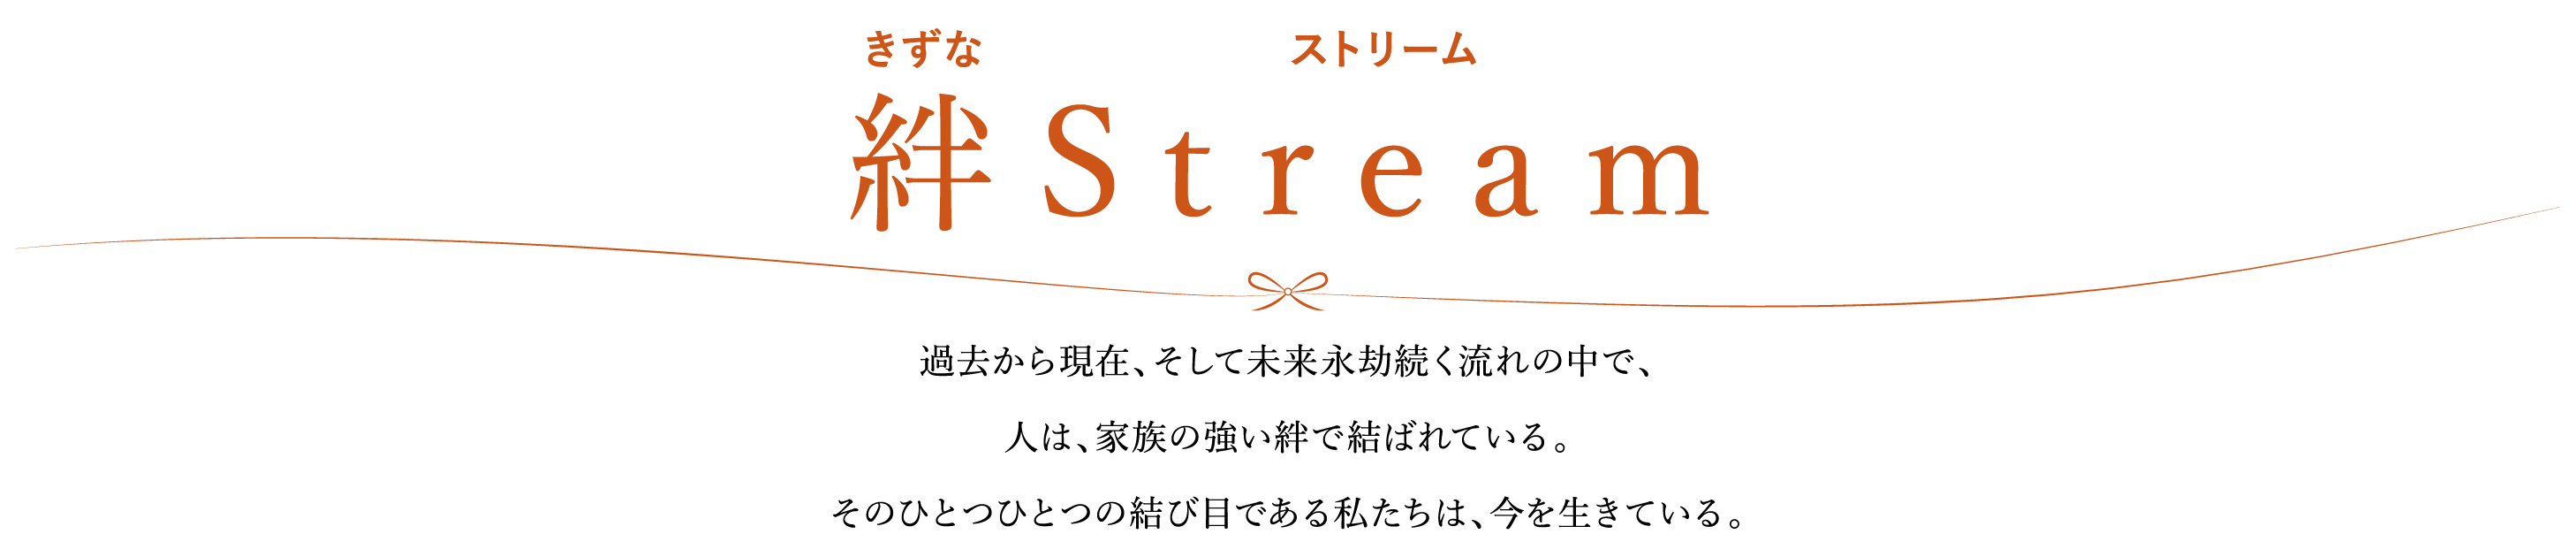 絆 Stream